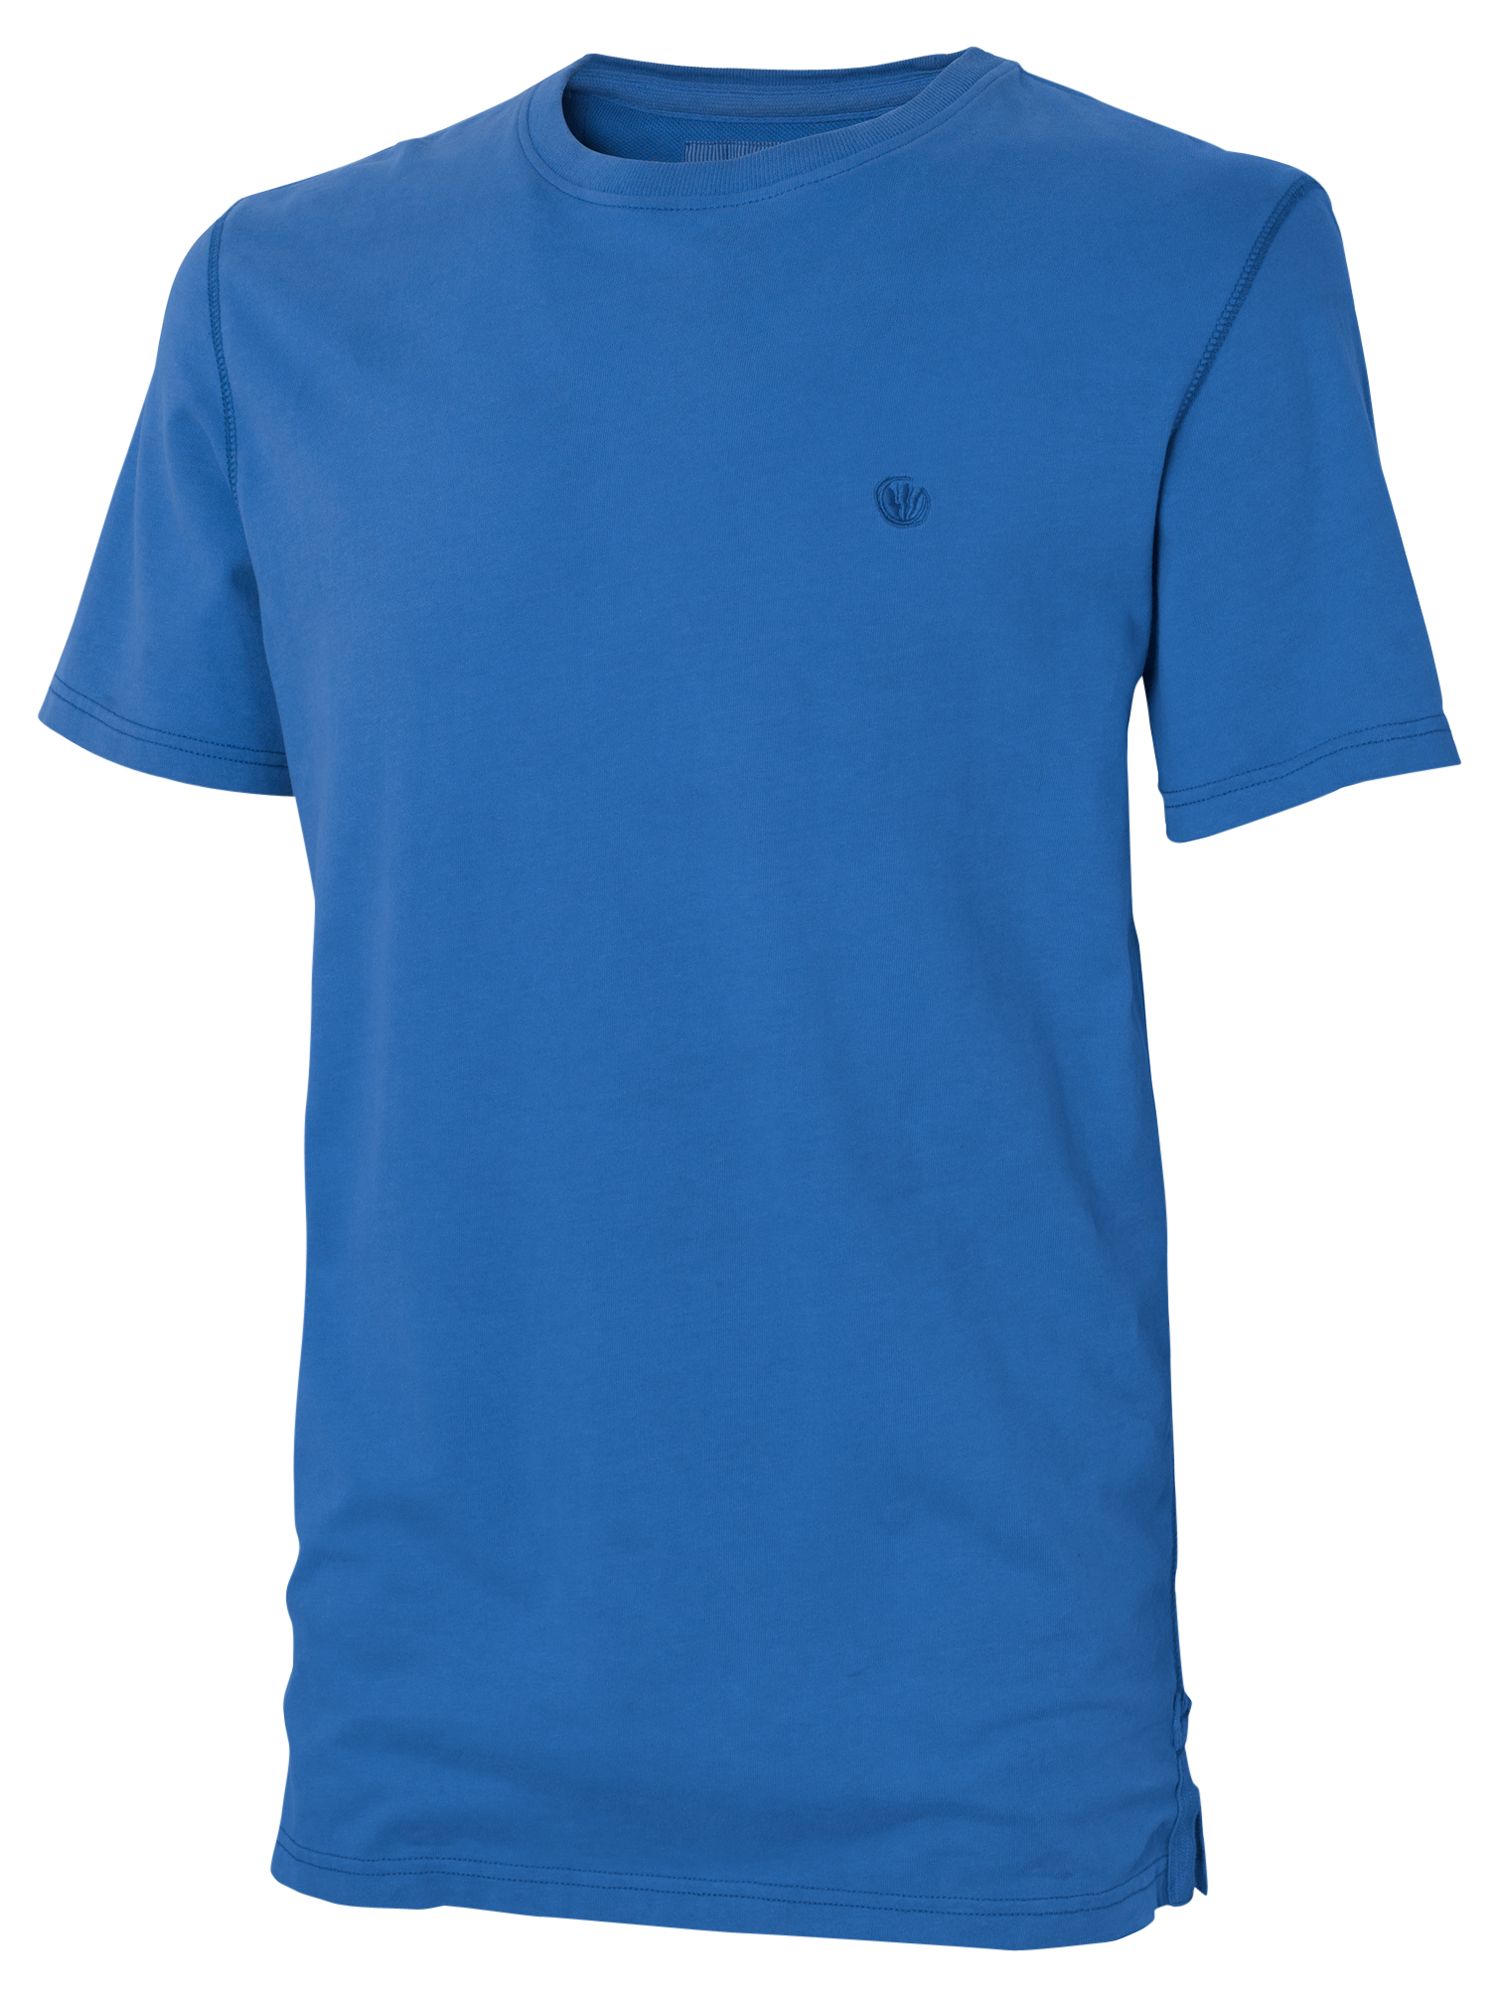 Original Crew Neck T-Shirt, Turquoise